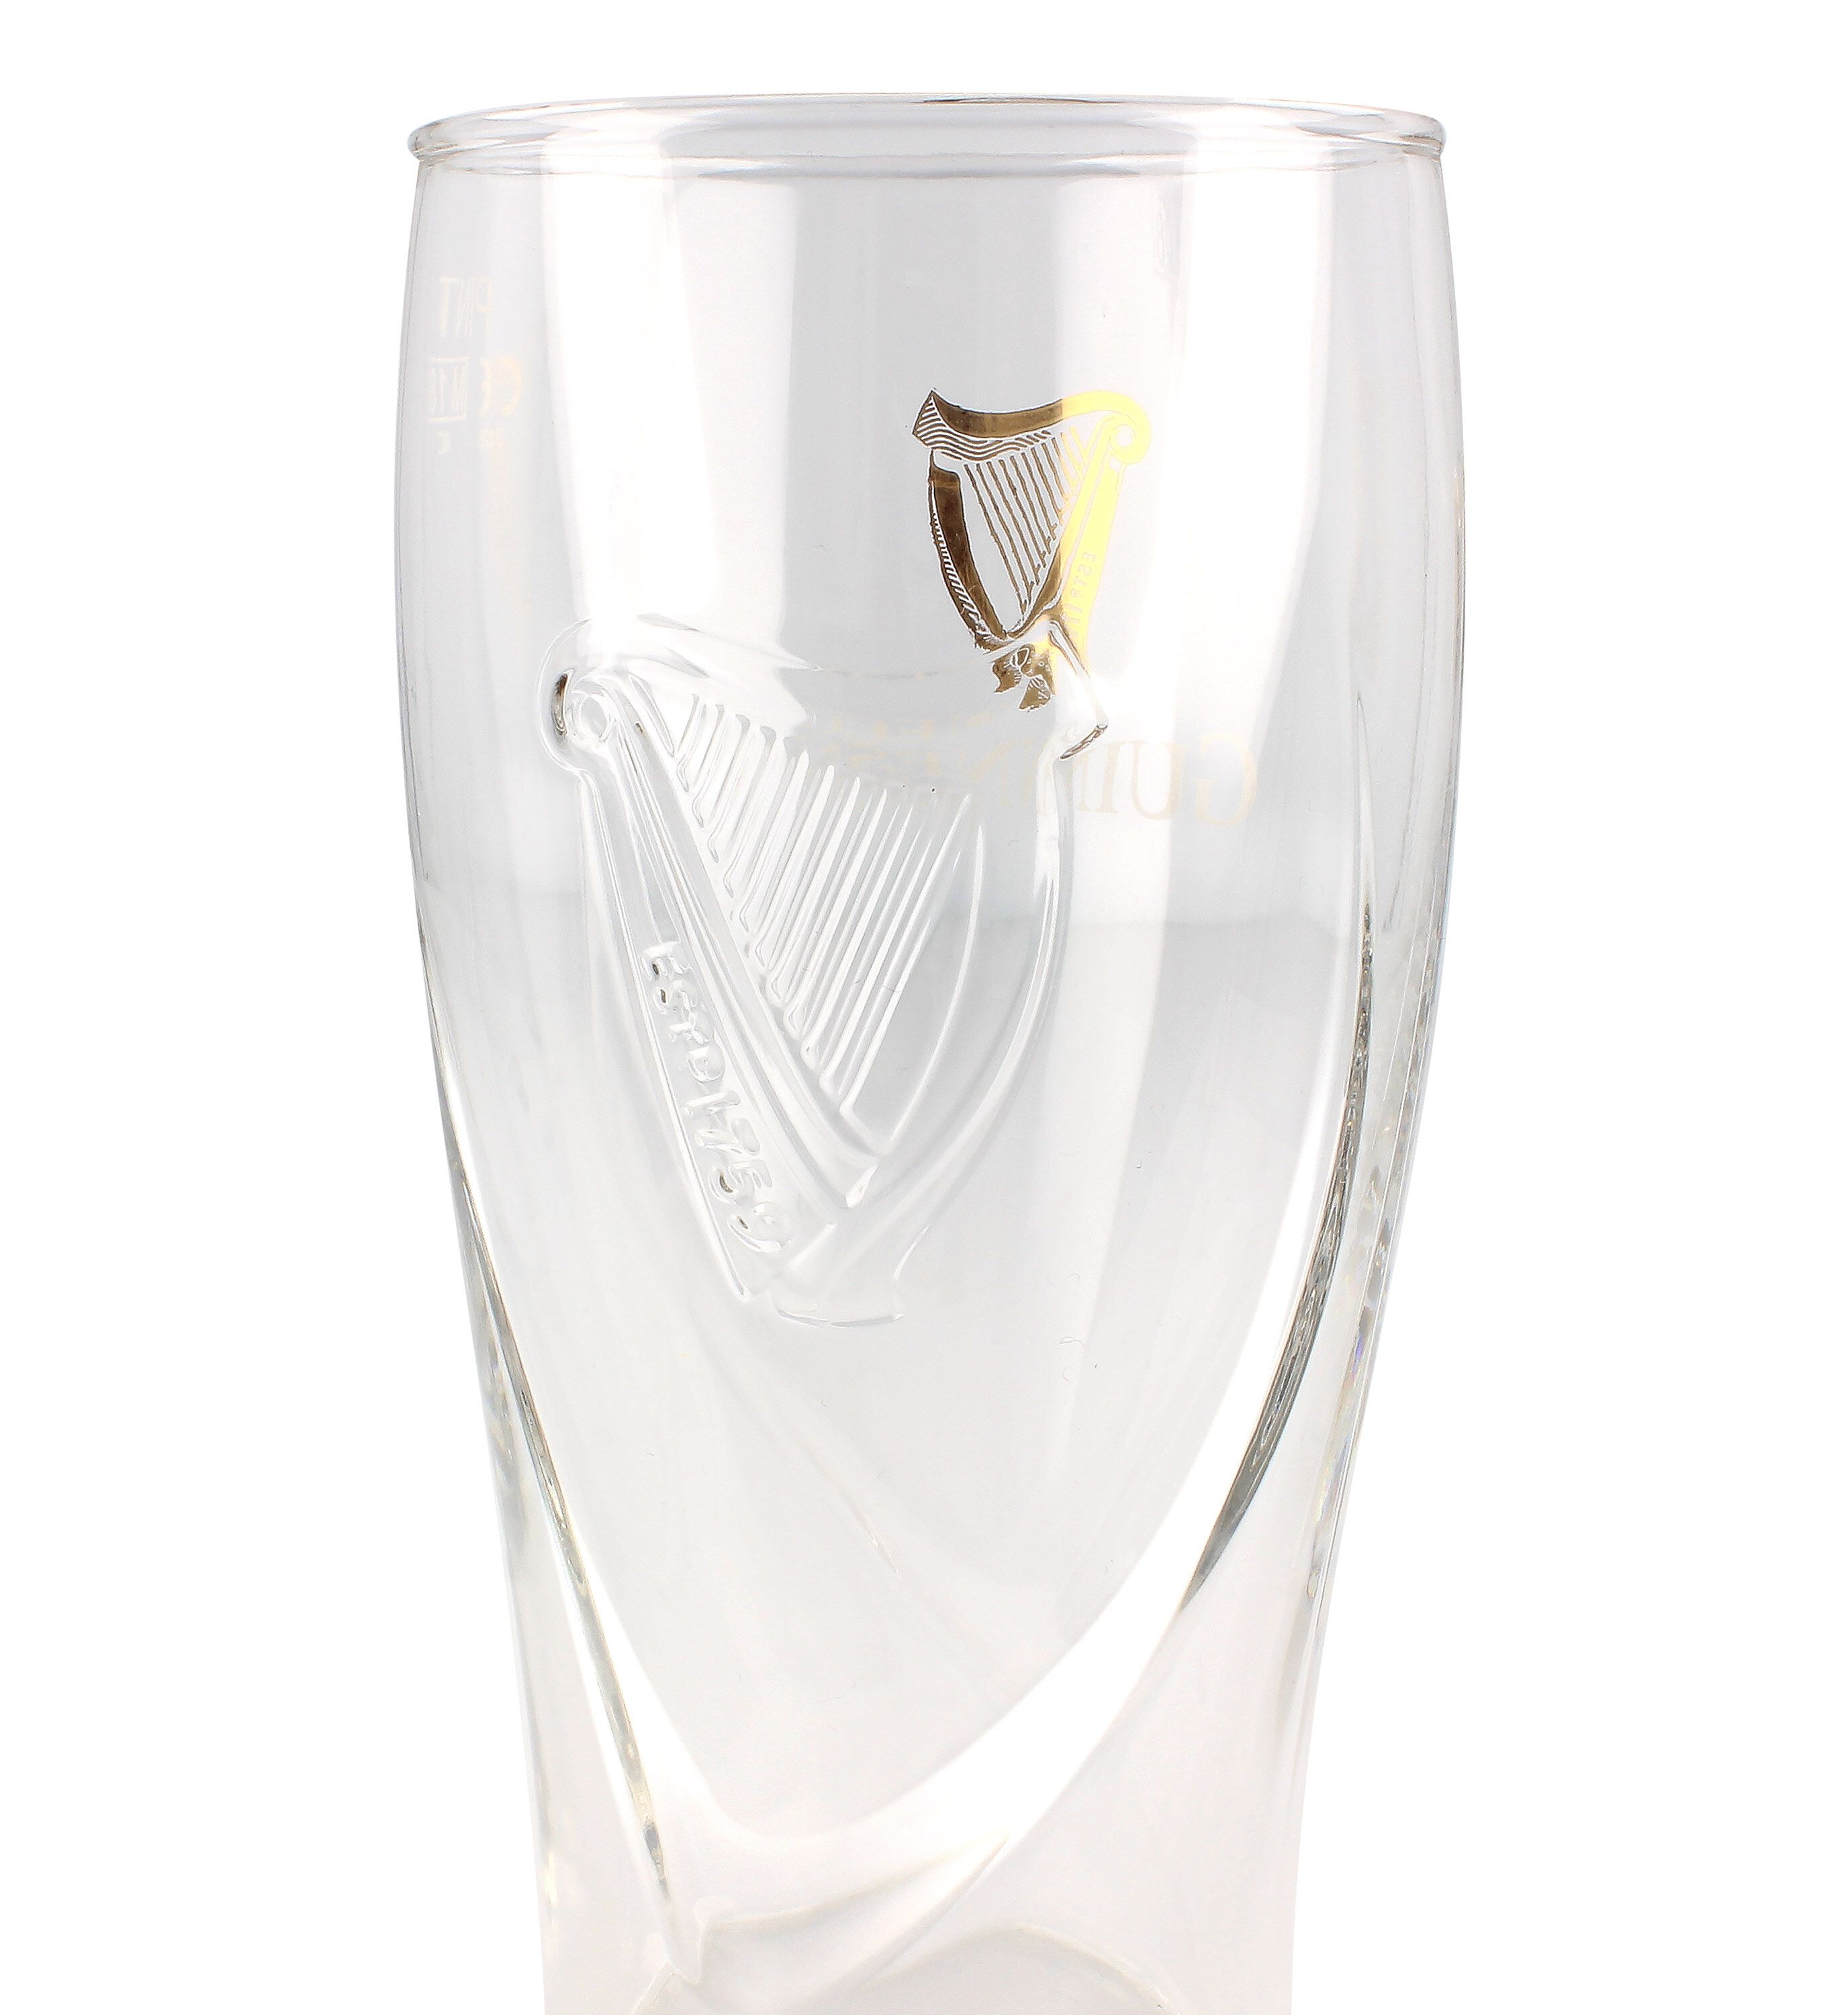 Guinness Harp Gravity 20oz Pint Glass 2-Pack